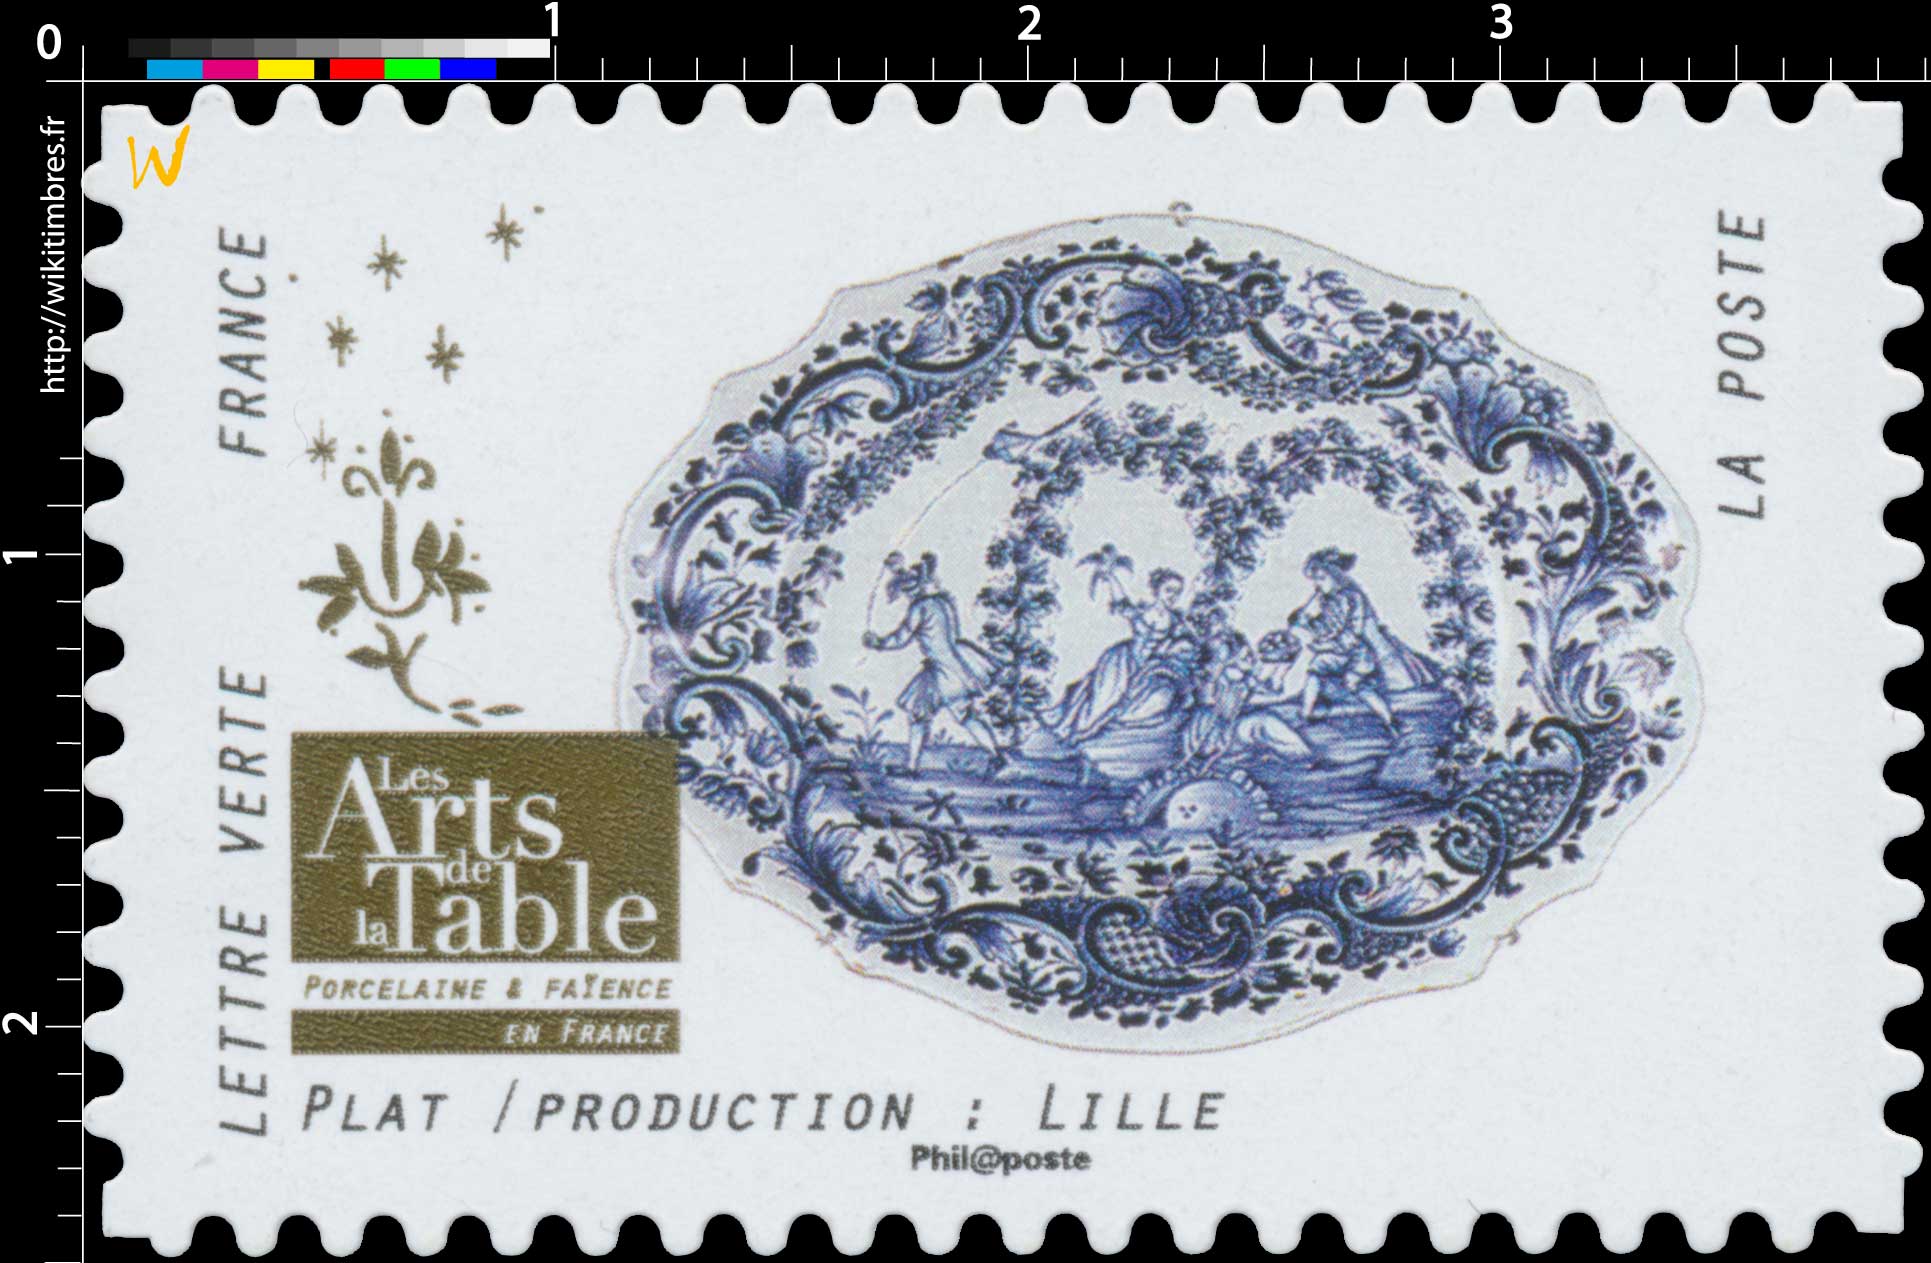 2018 Les Arts de la Table -  Porcelaine & Faïence - En France - Plat / Production : Lille